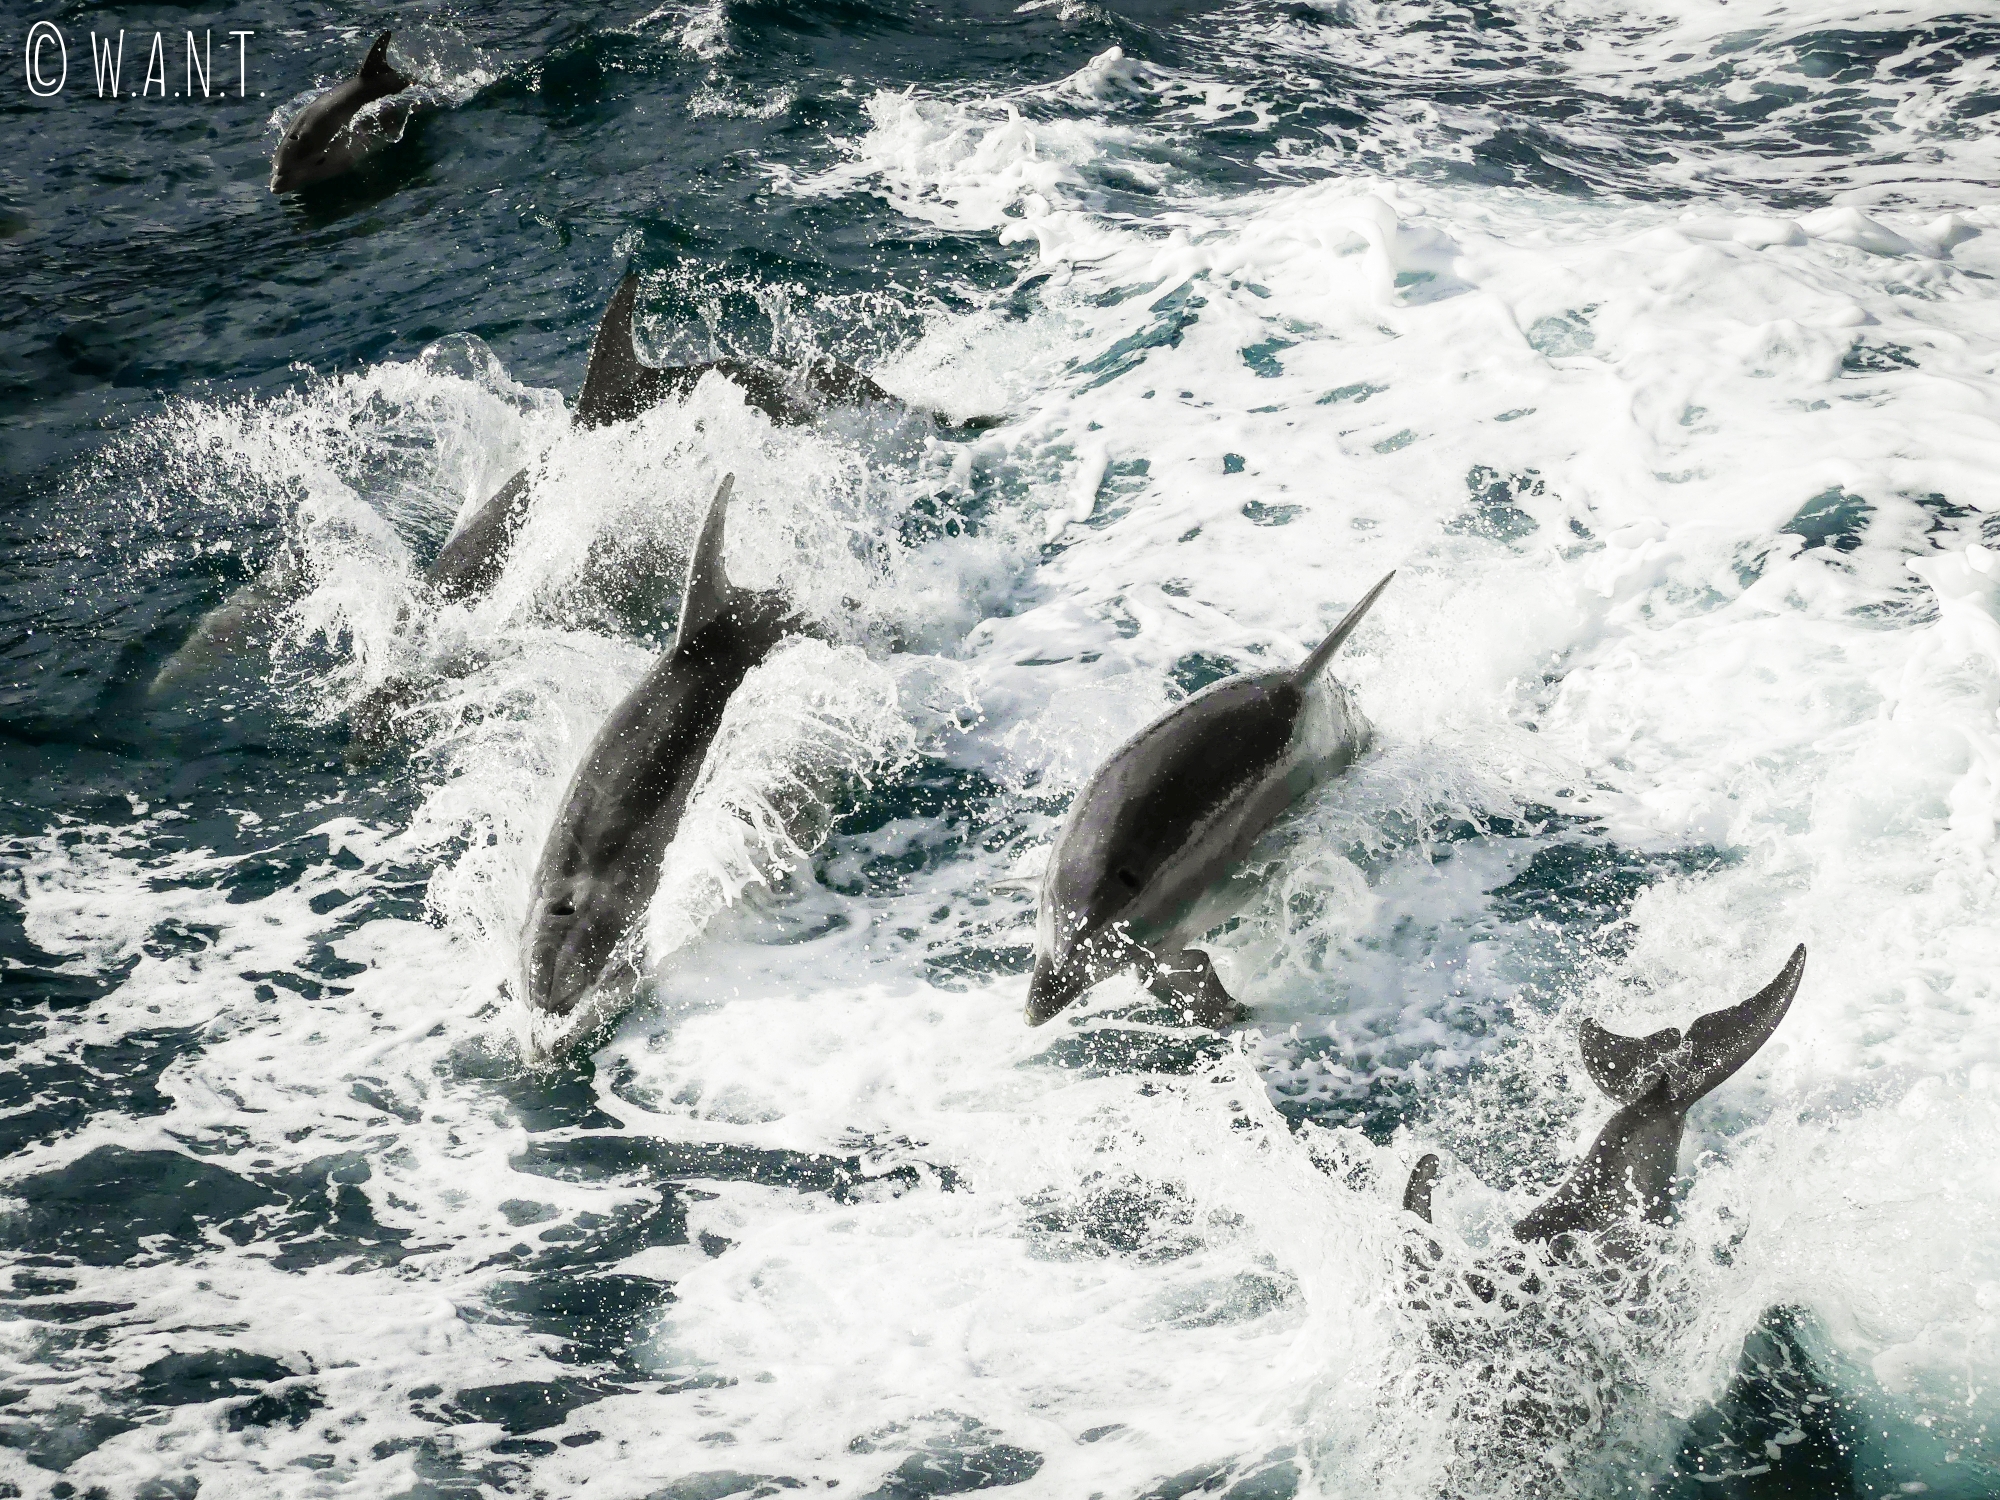 Les dauphins s'amusent dans les vagues de notre bateau durant notre croisière sur le Milford Sound en Nouvelle-Zélande